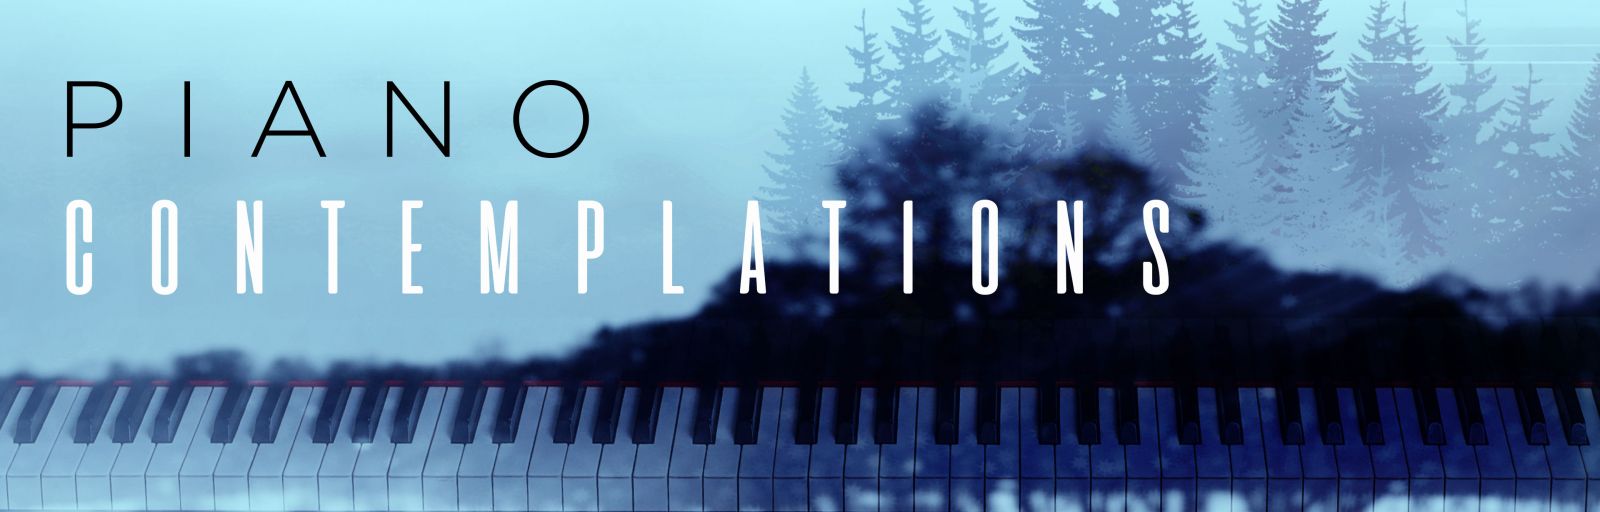 Piano Contemplations album